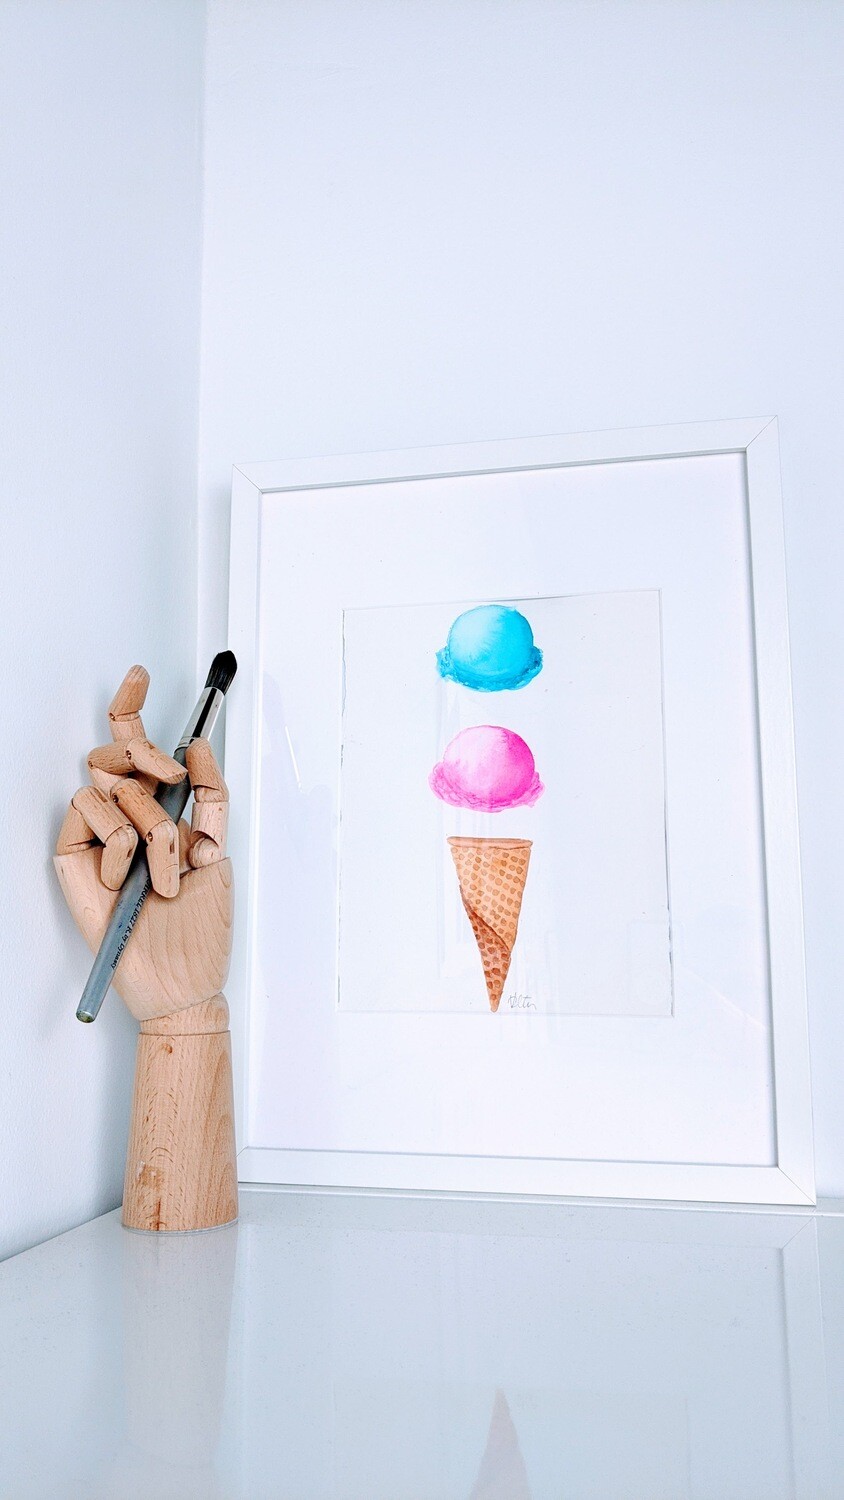 Watercolor Ice Cream Cone of Dreams